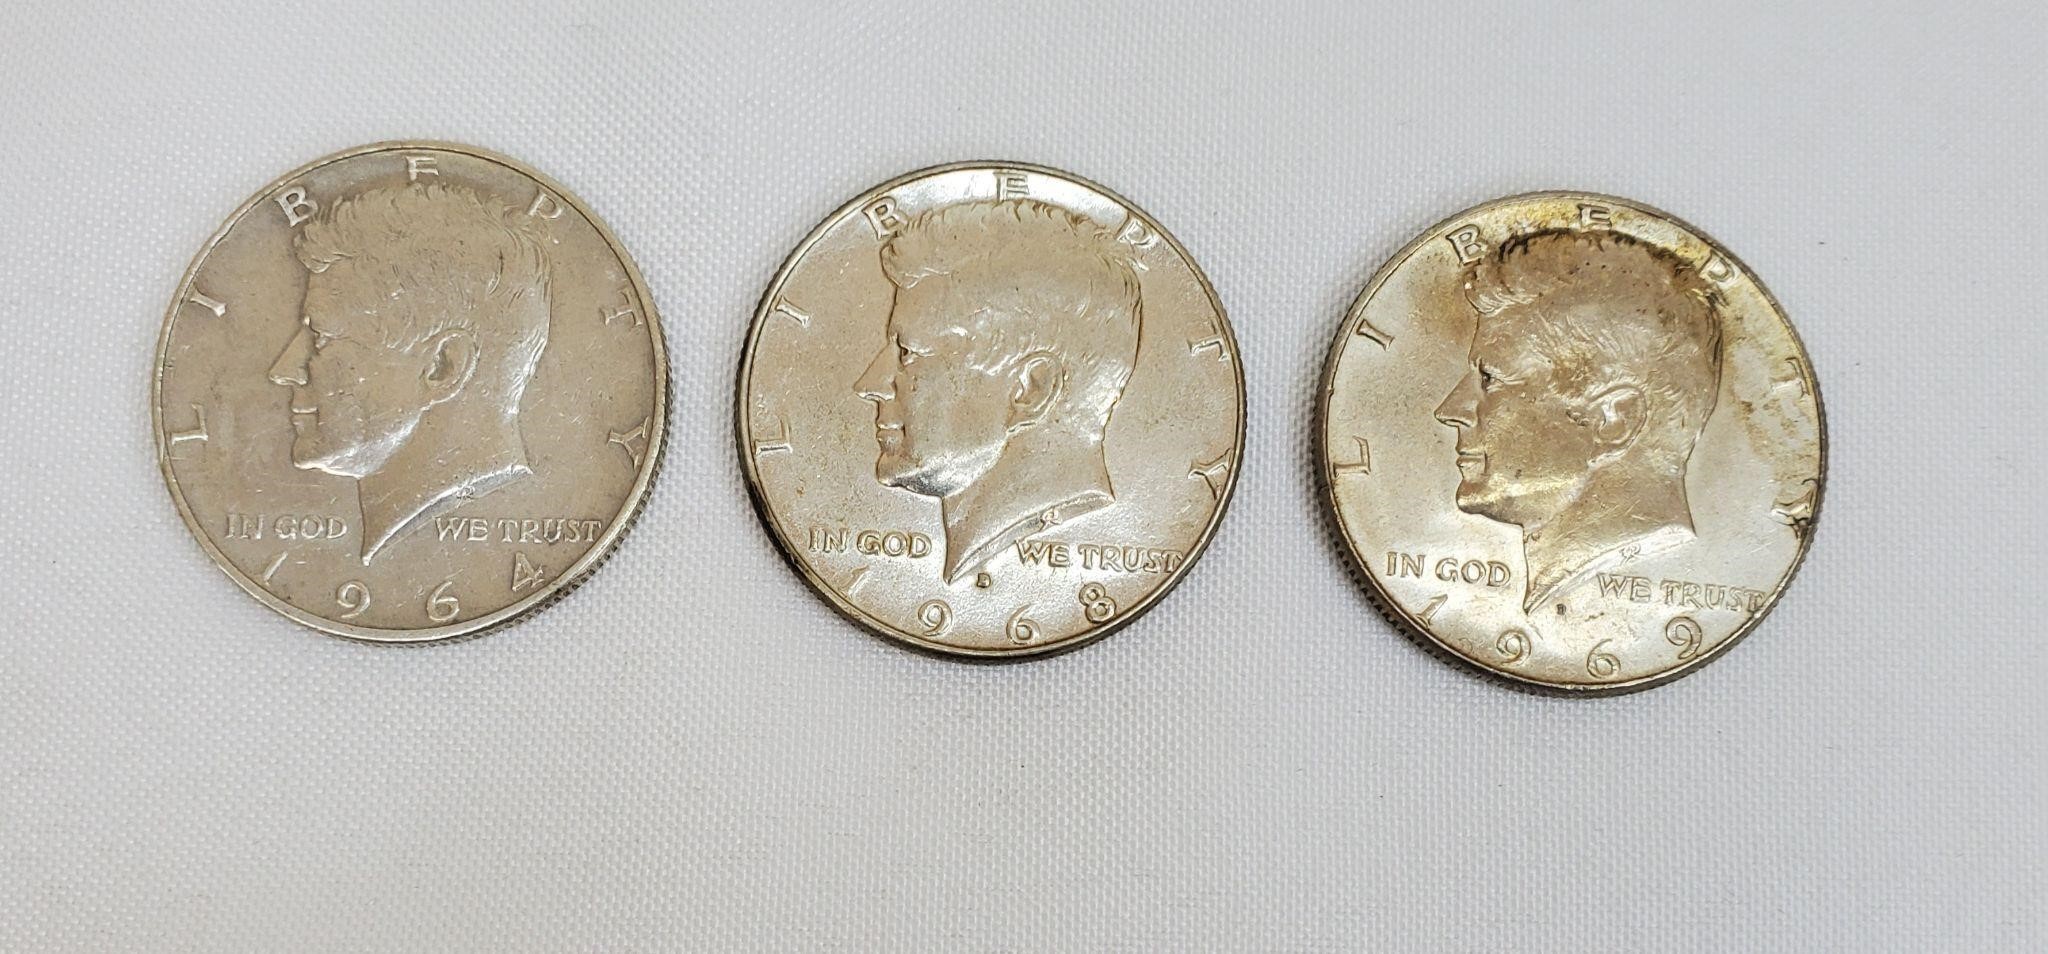 Silver Kennedy Half Dollars